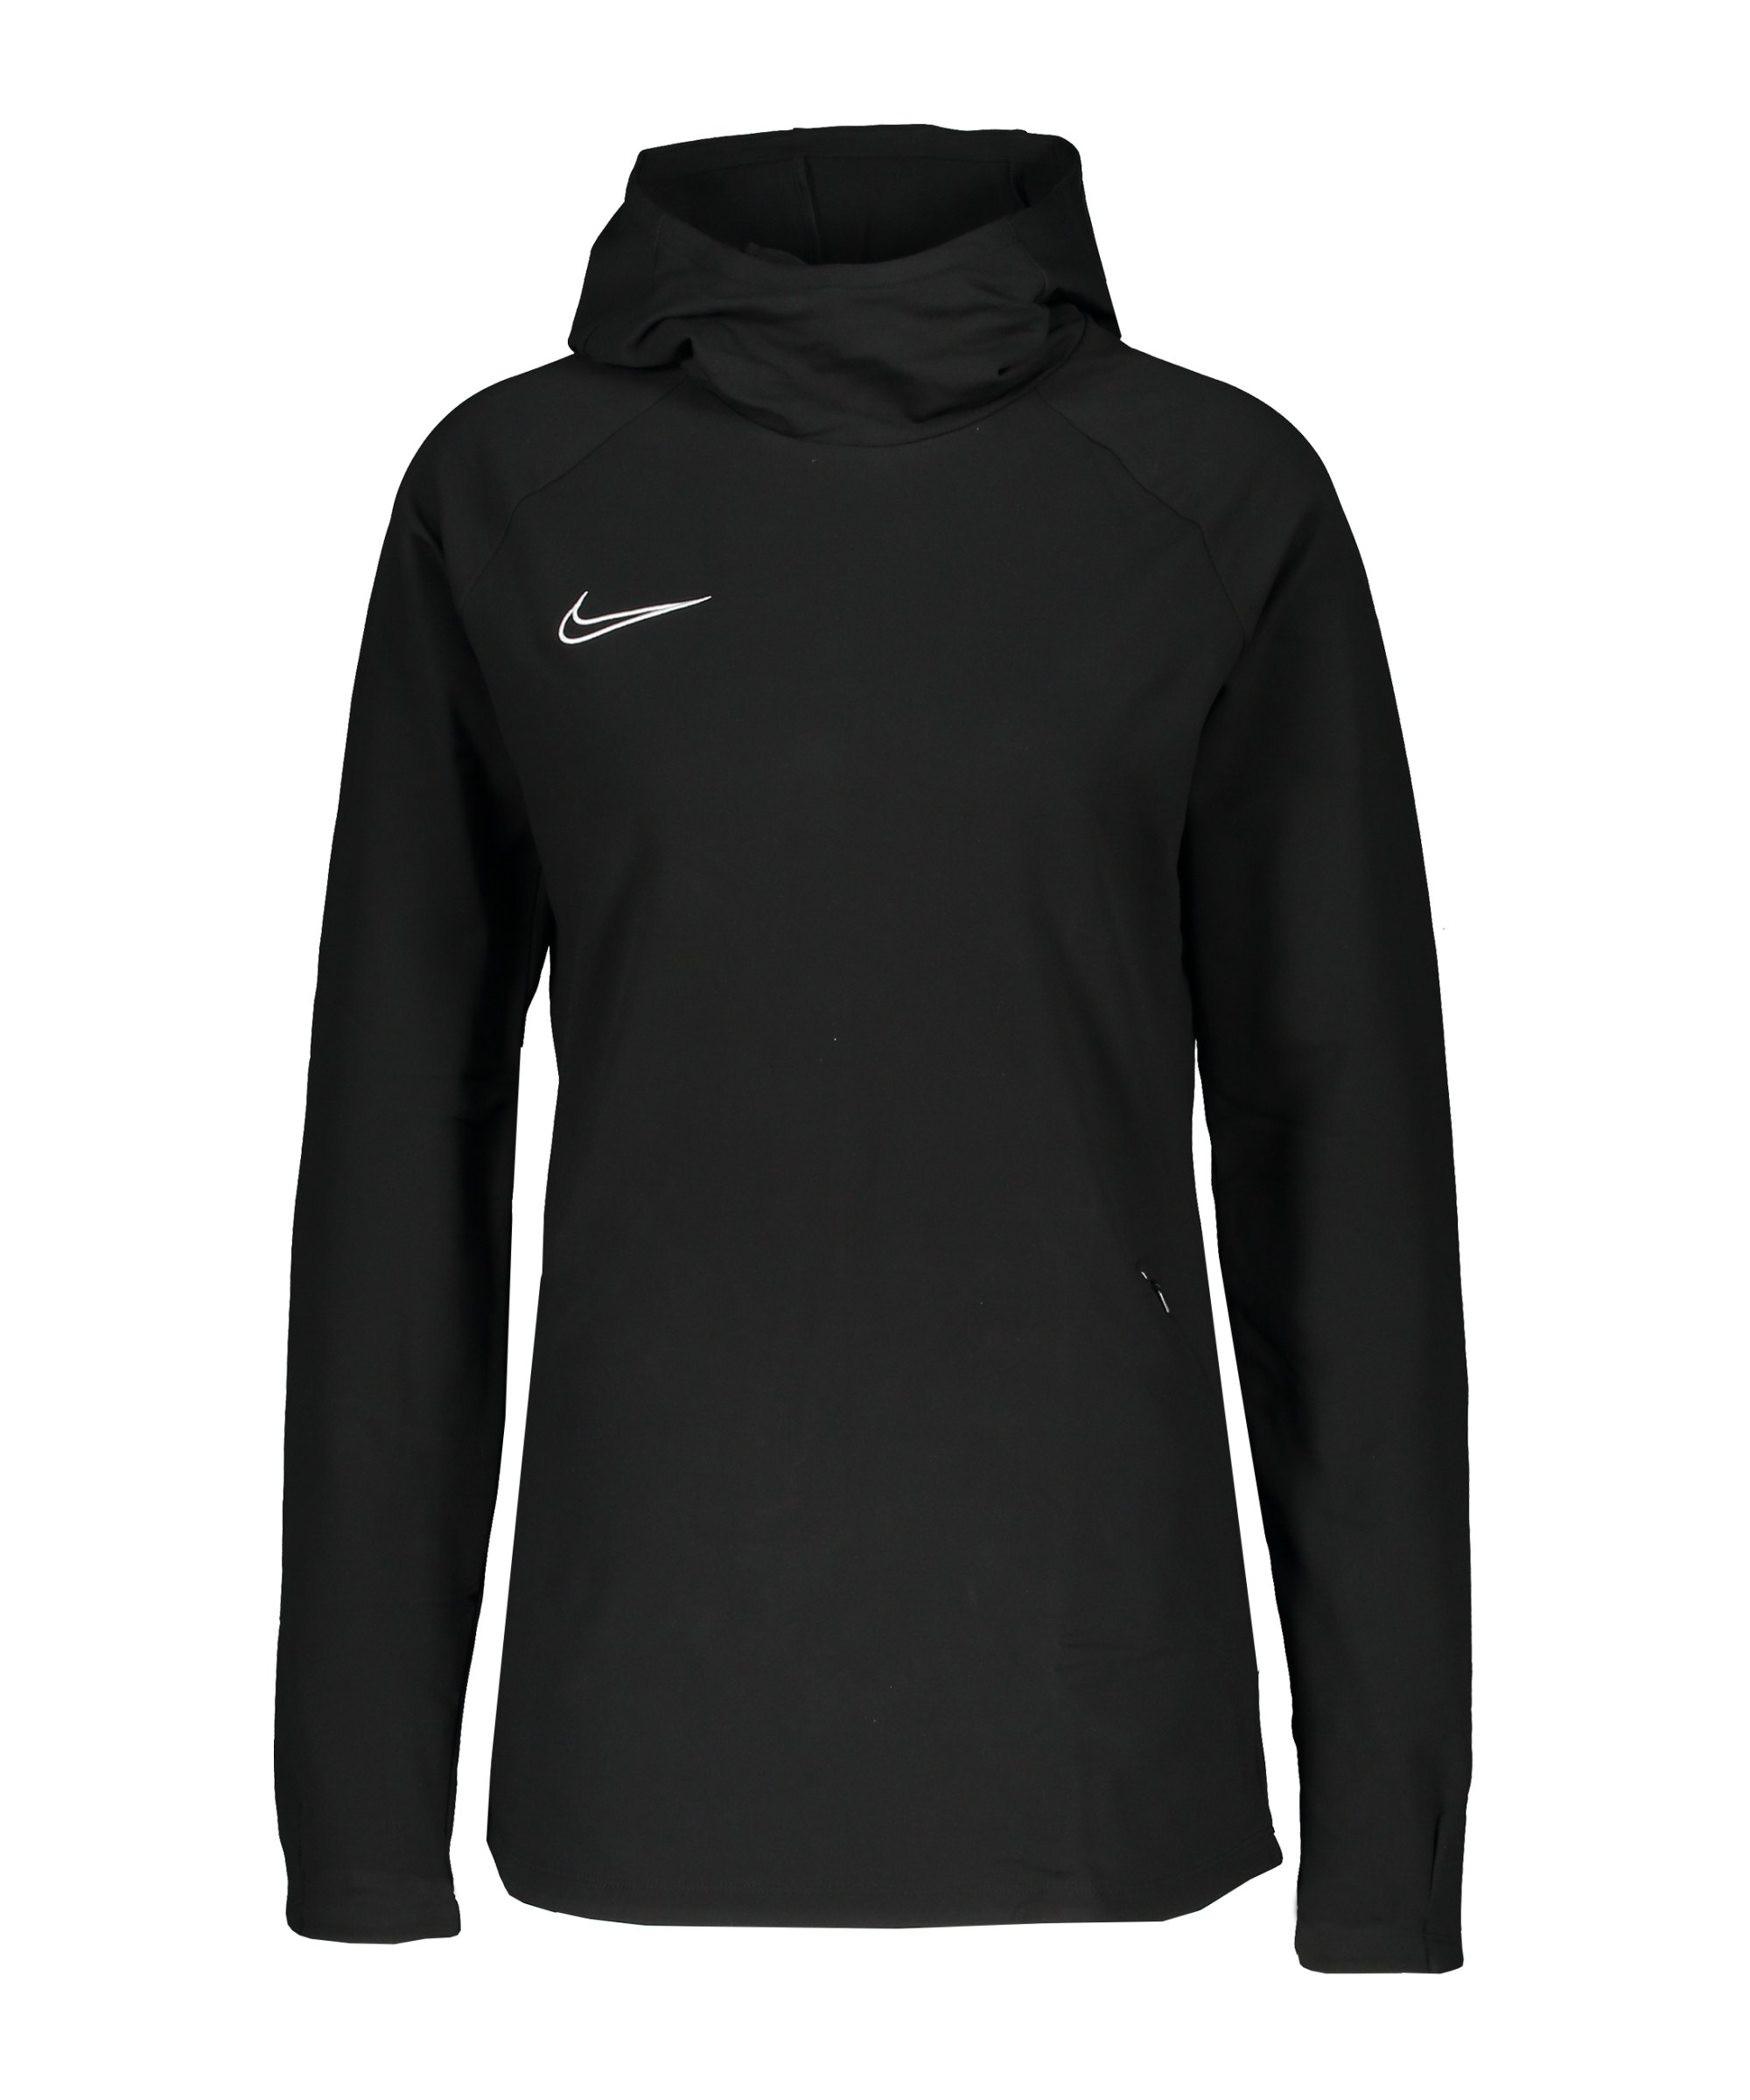 Nike Academy Hoody Damen Schwarz Weiss F010 - schwarz